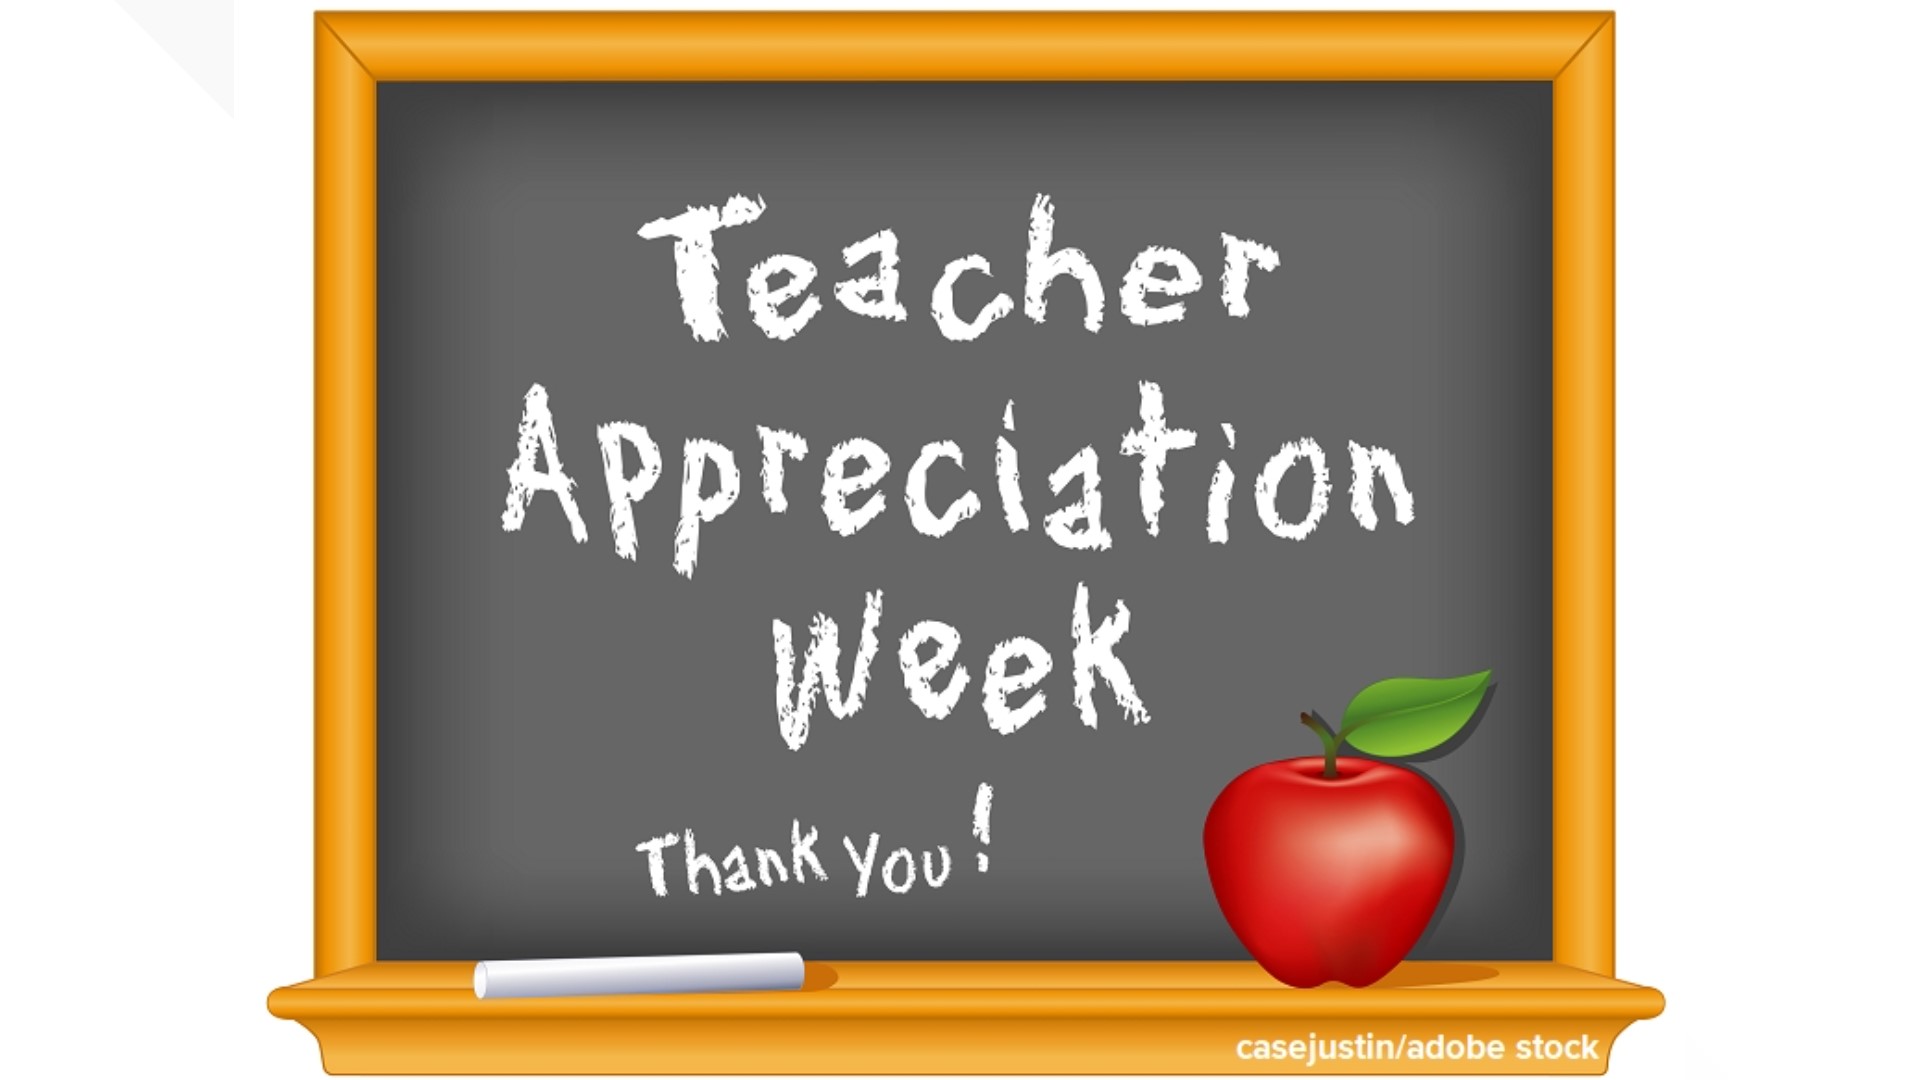 13News education expert Jennifer Brinker shared gift ideas for Teacher Appreciation Week.